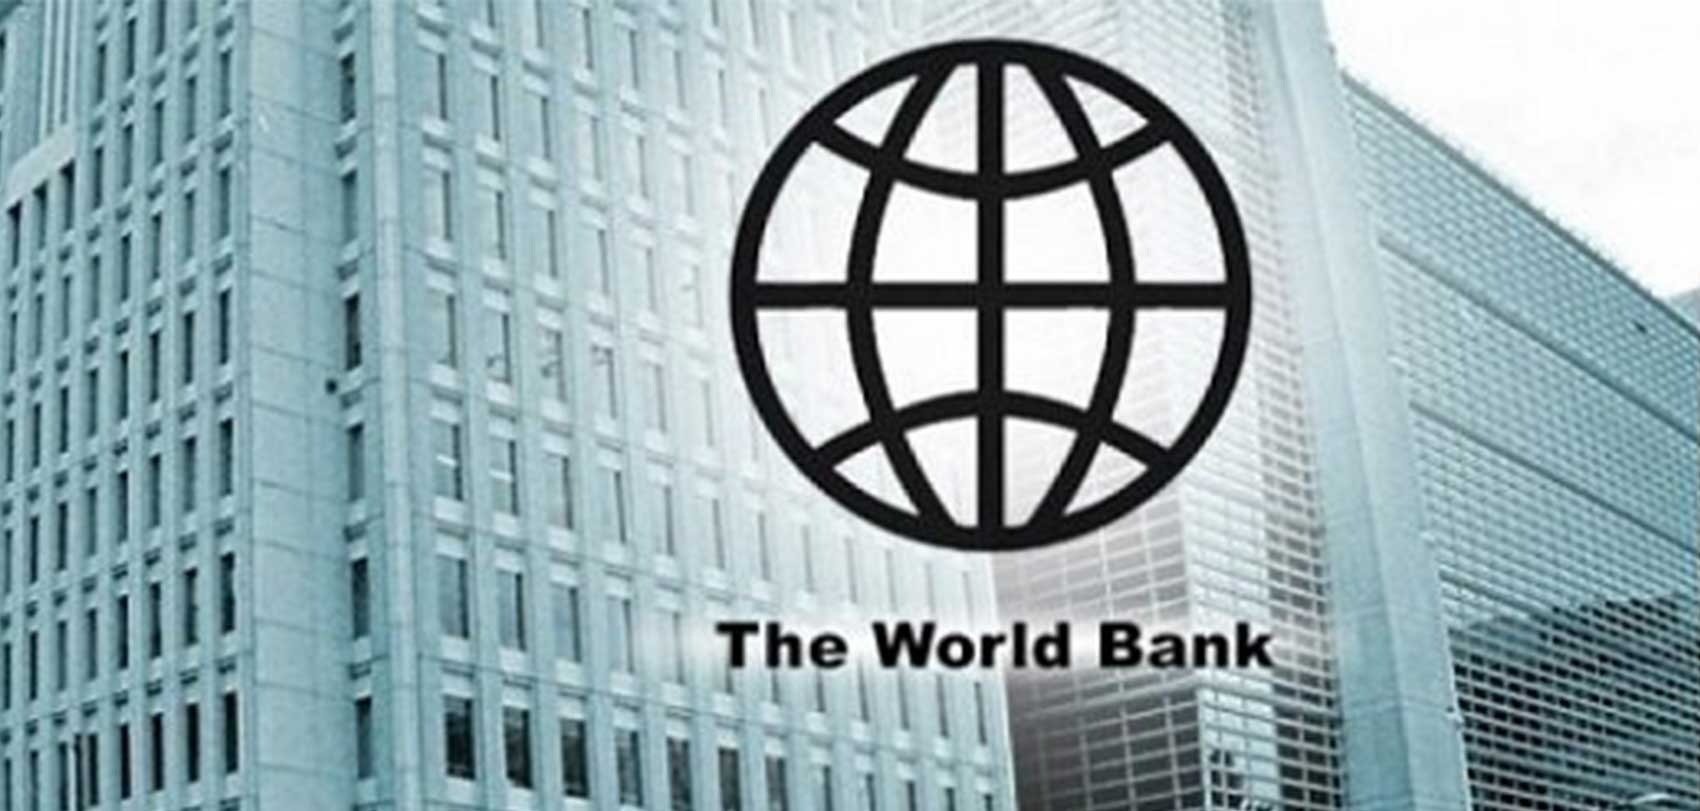 नेपालको आर्थिक वृद्धिदर ५.१ प्रतिशत रहने विश्व बैंकको प्रक्षेपण